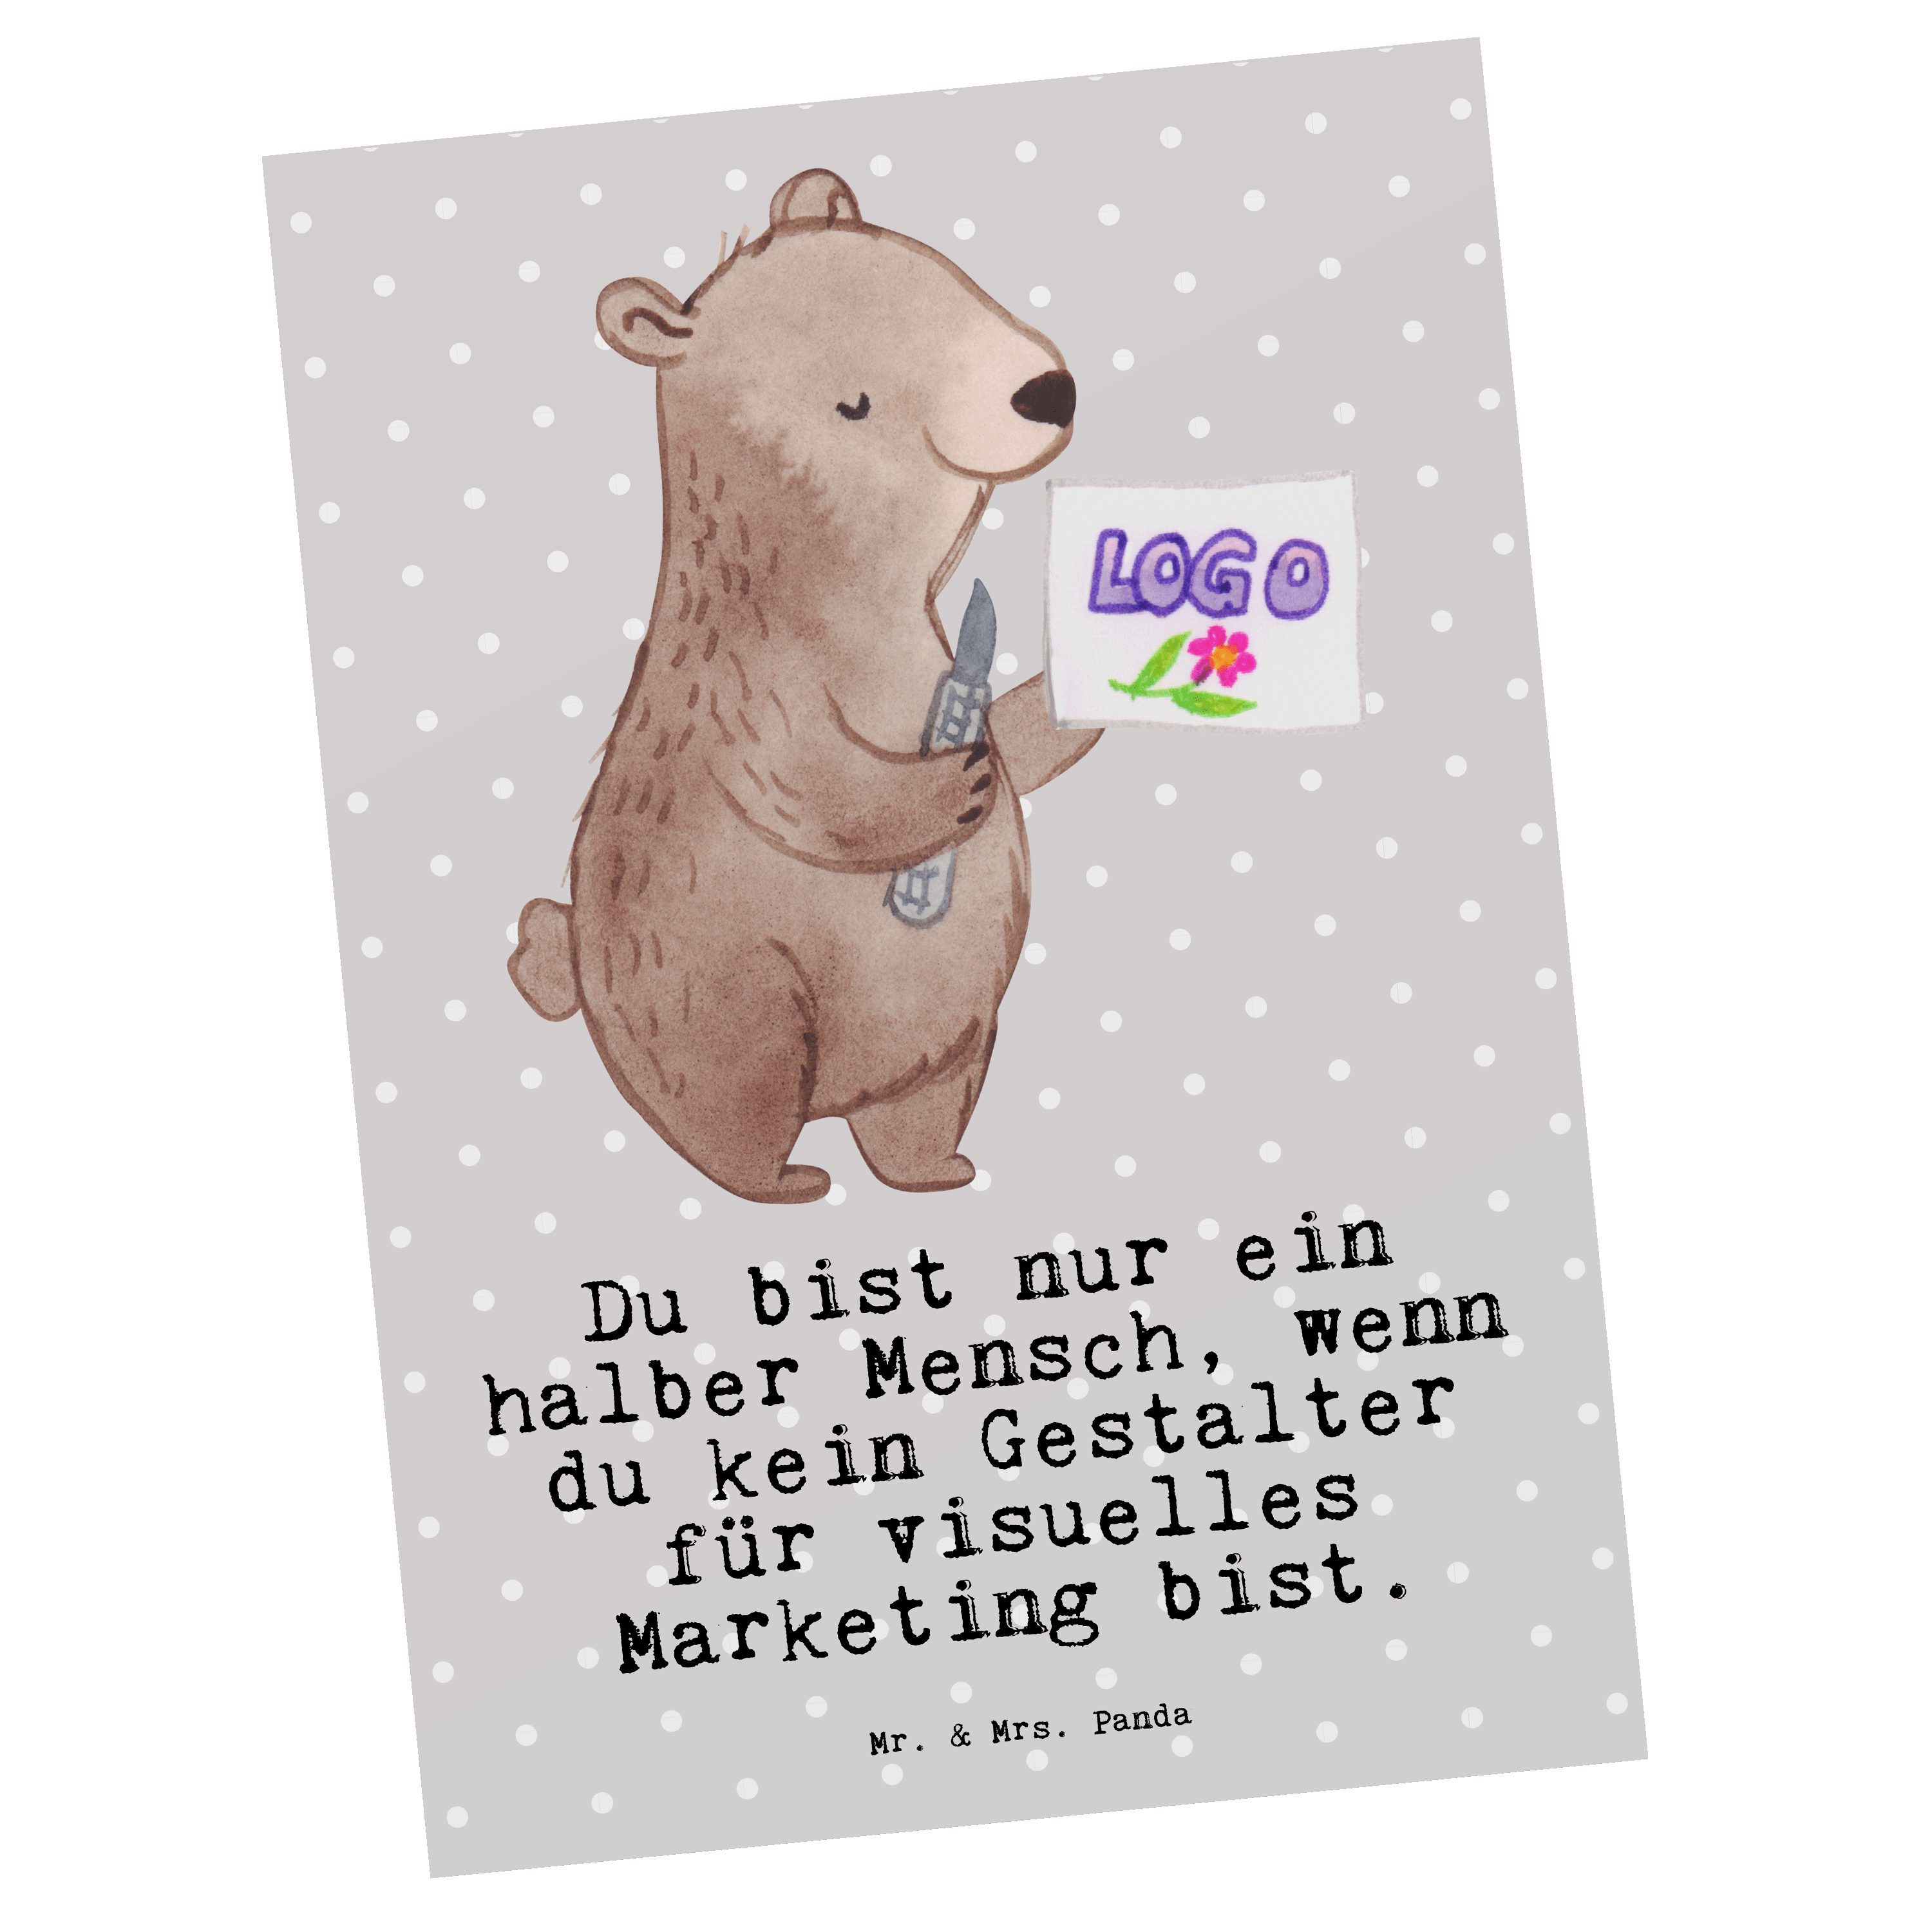 Mr. & Mrs. Panda Postkarte Gestalter für visuelles Marketing mit Herz - Grau Pastell - Geschenk